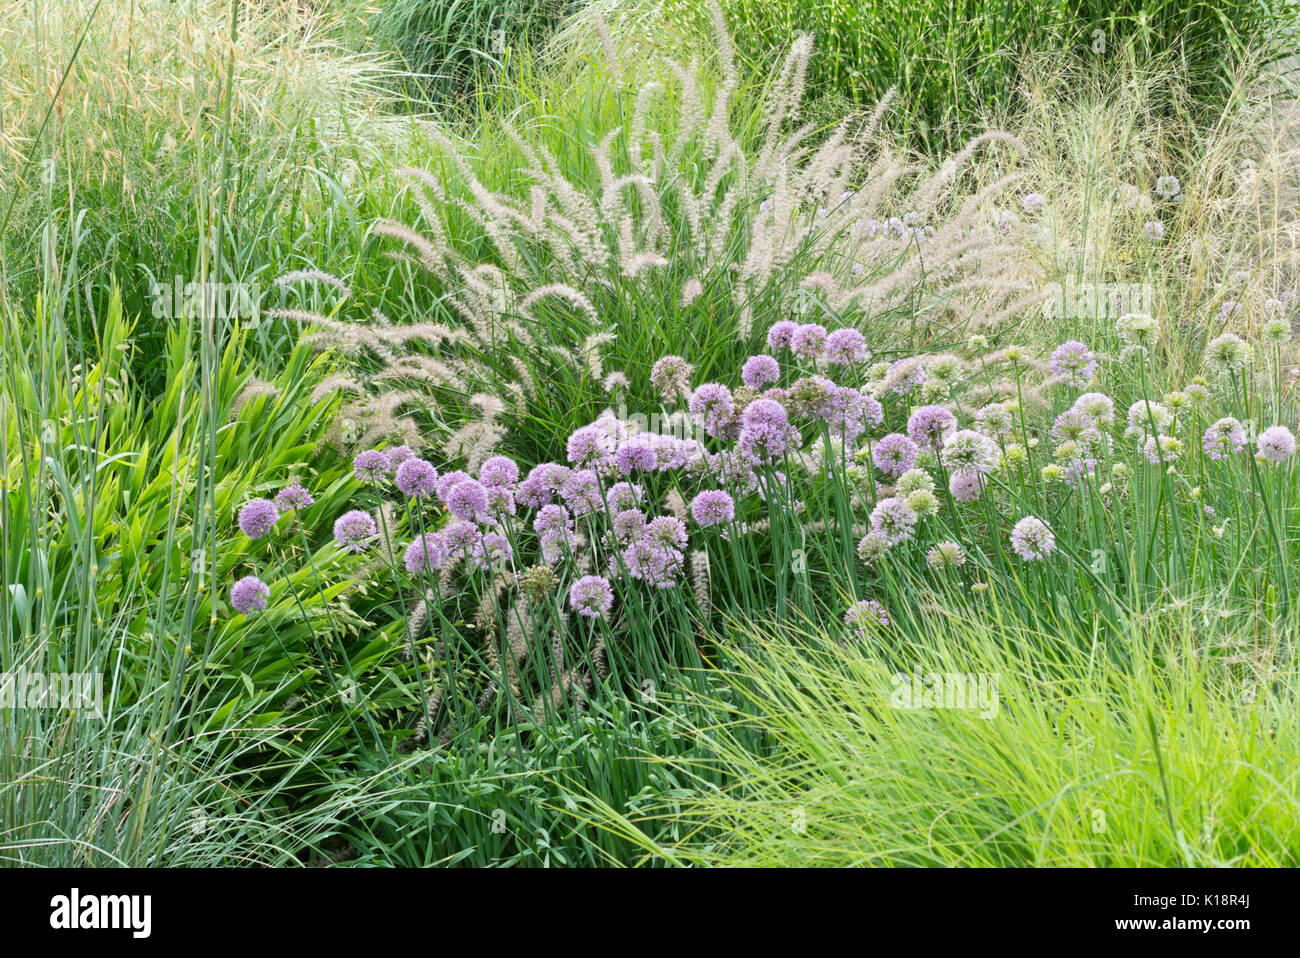 Allium sacculiferum syn. Allium komarovianum and fountain grass (Pennisetum orientale) Stock Photo